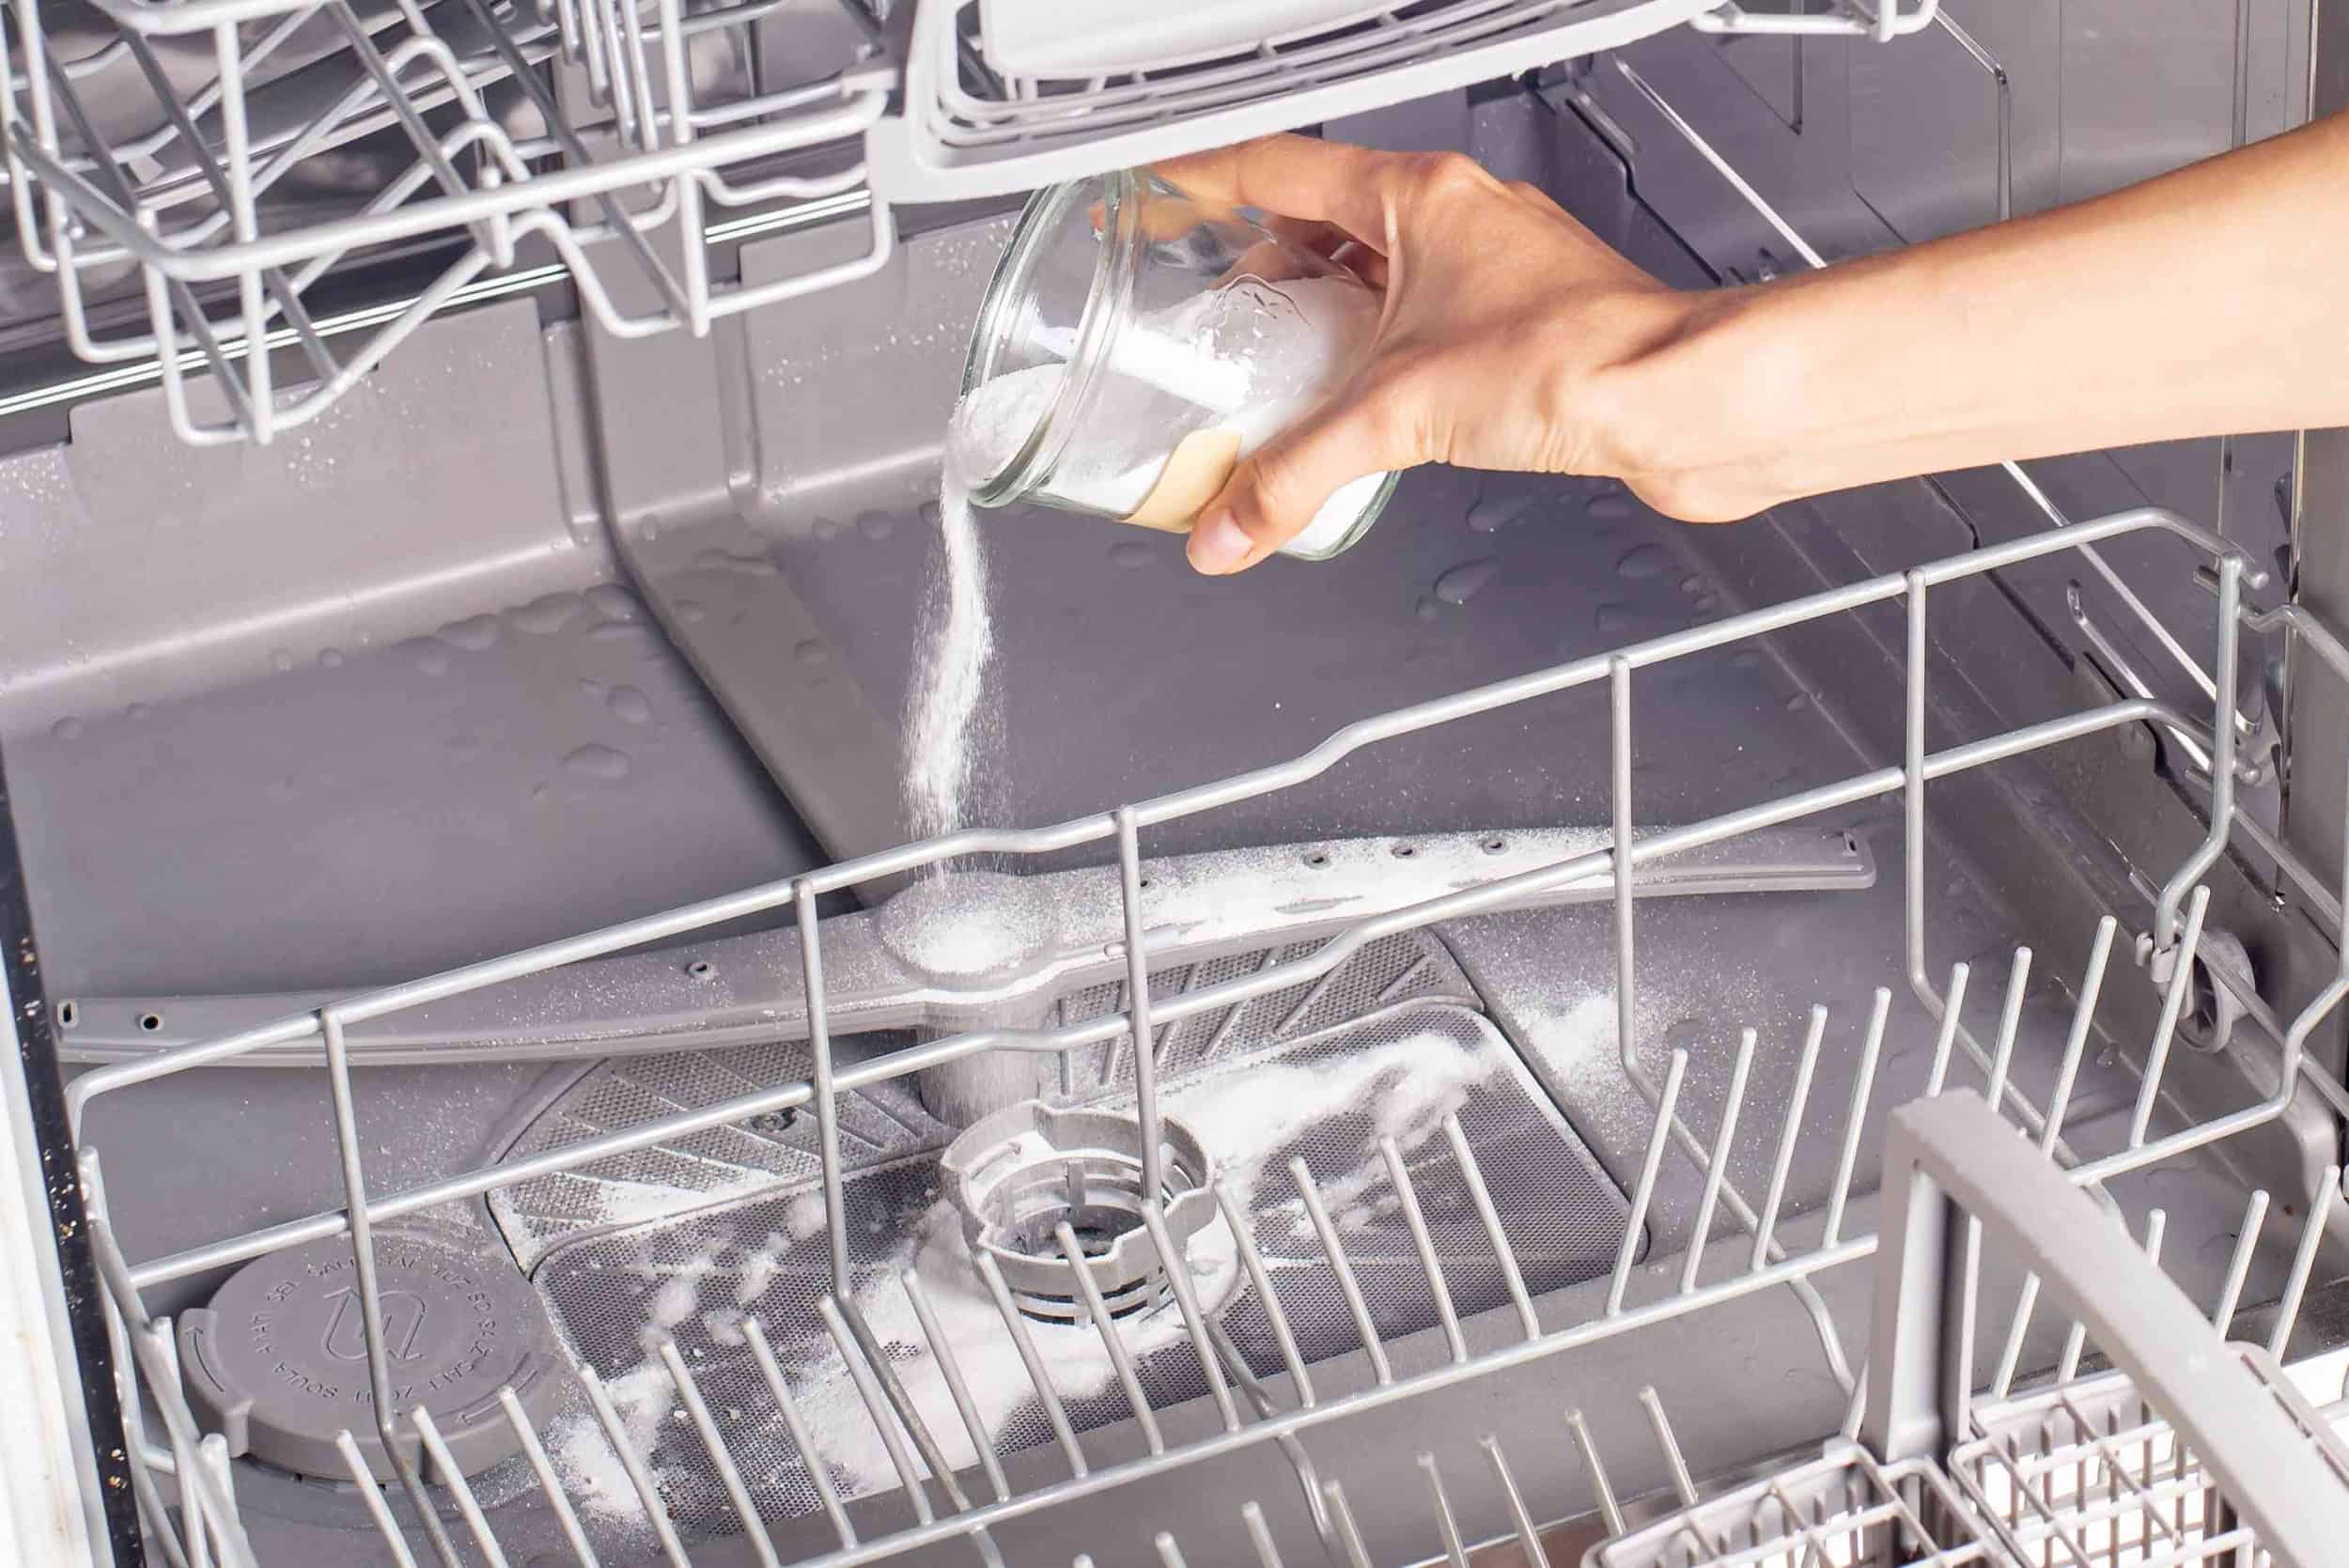 Как почистить посудомоечную машину? - xclean.info